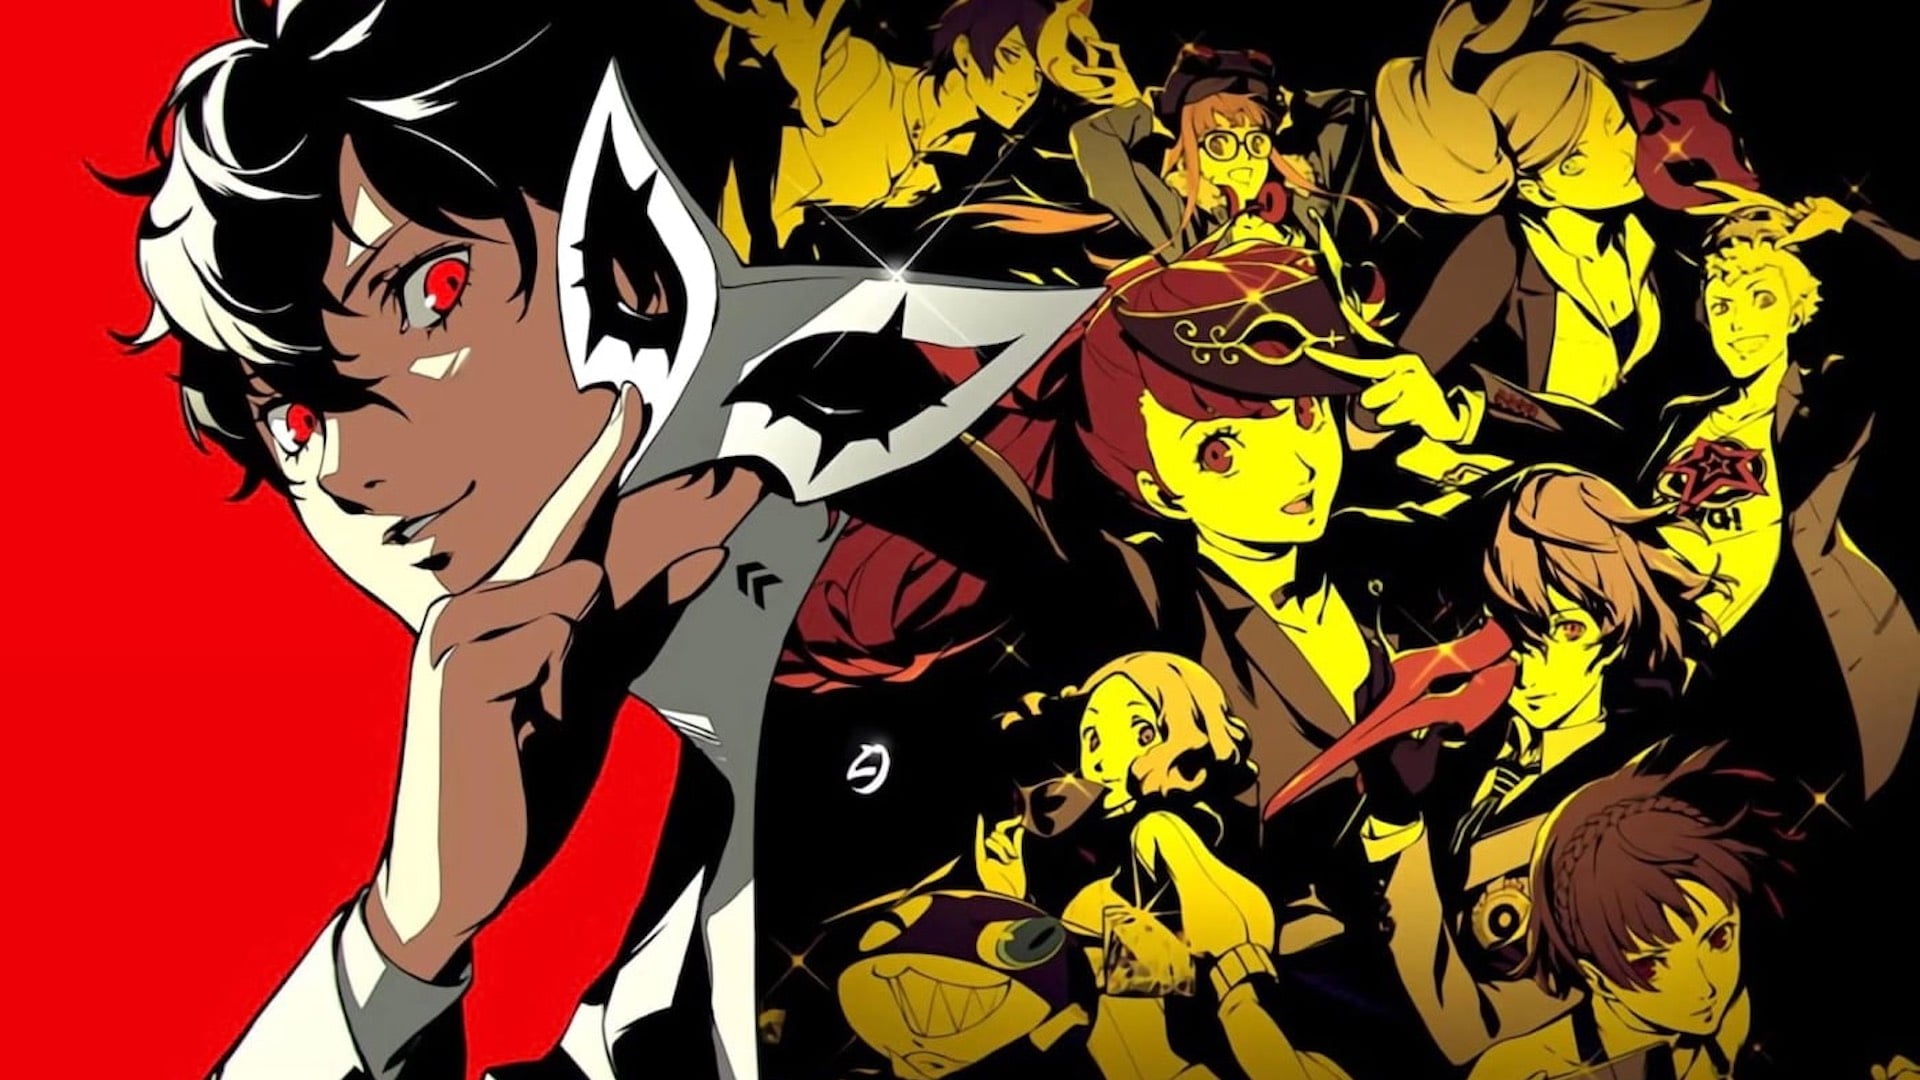 Imagem de divulgação de Persona 5 Royal, apresentando todos os personagens do game